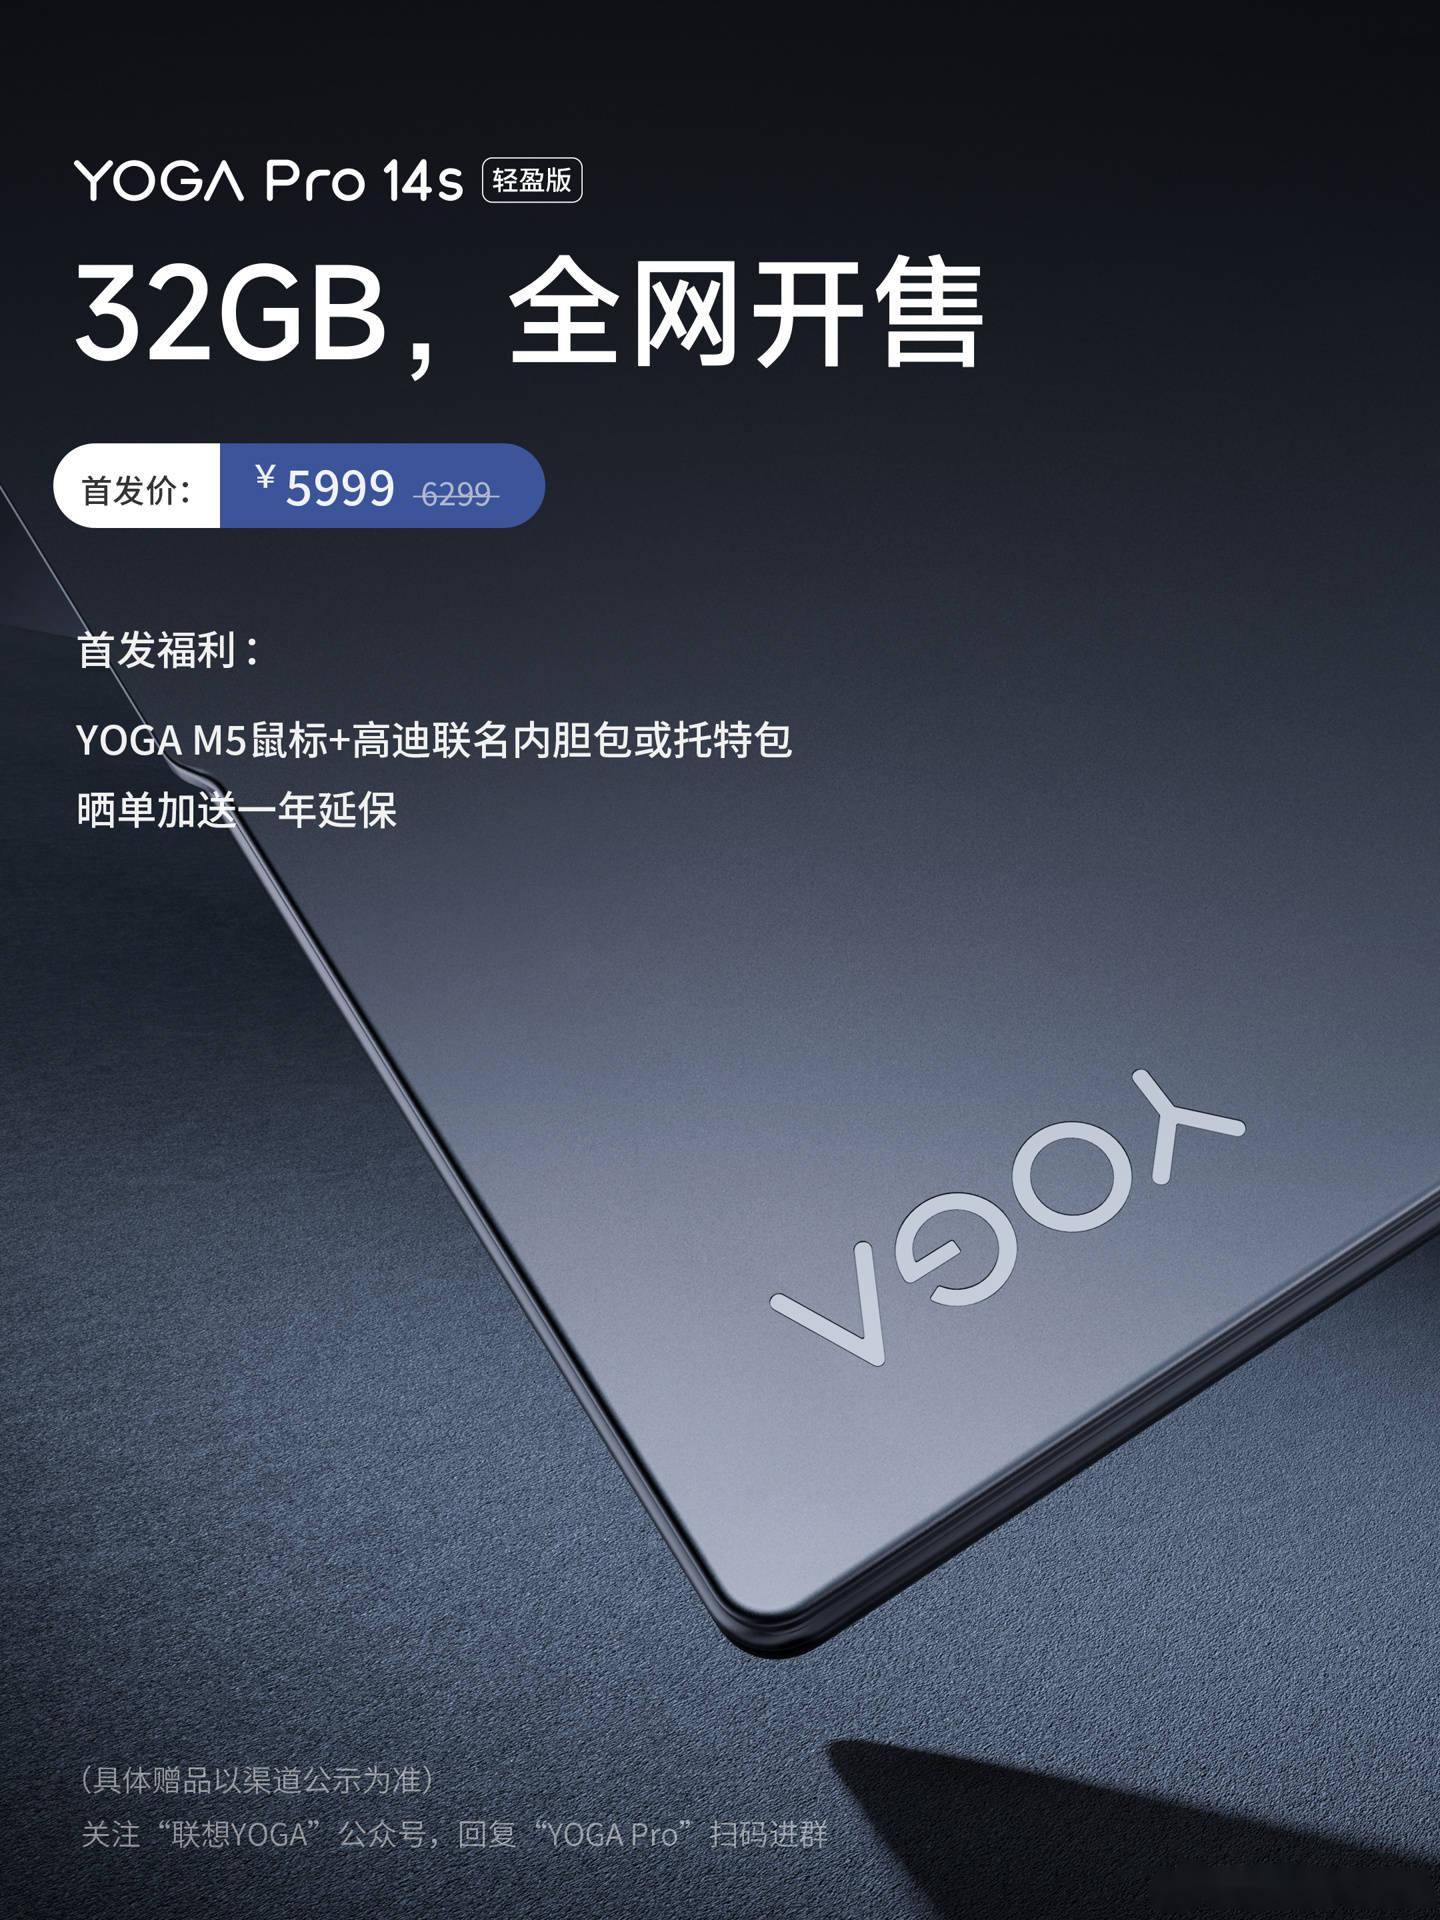 联想 YOGA Pro 14s 轻盈版 32GB 笔记本电脑今晚开售，首发5999元 